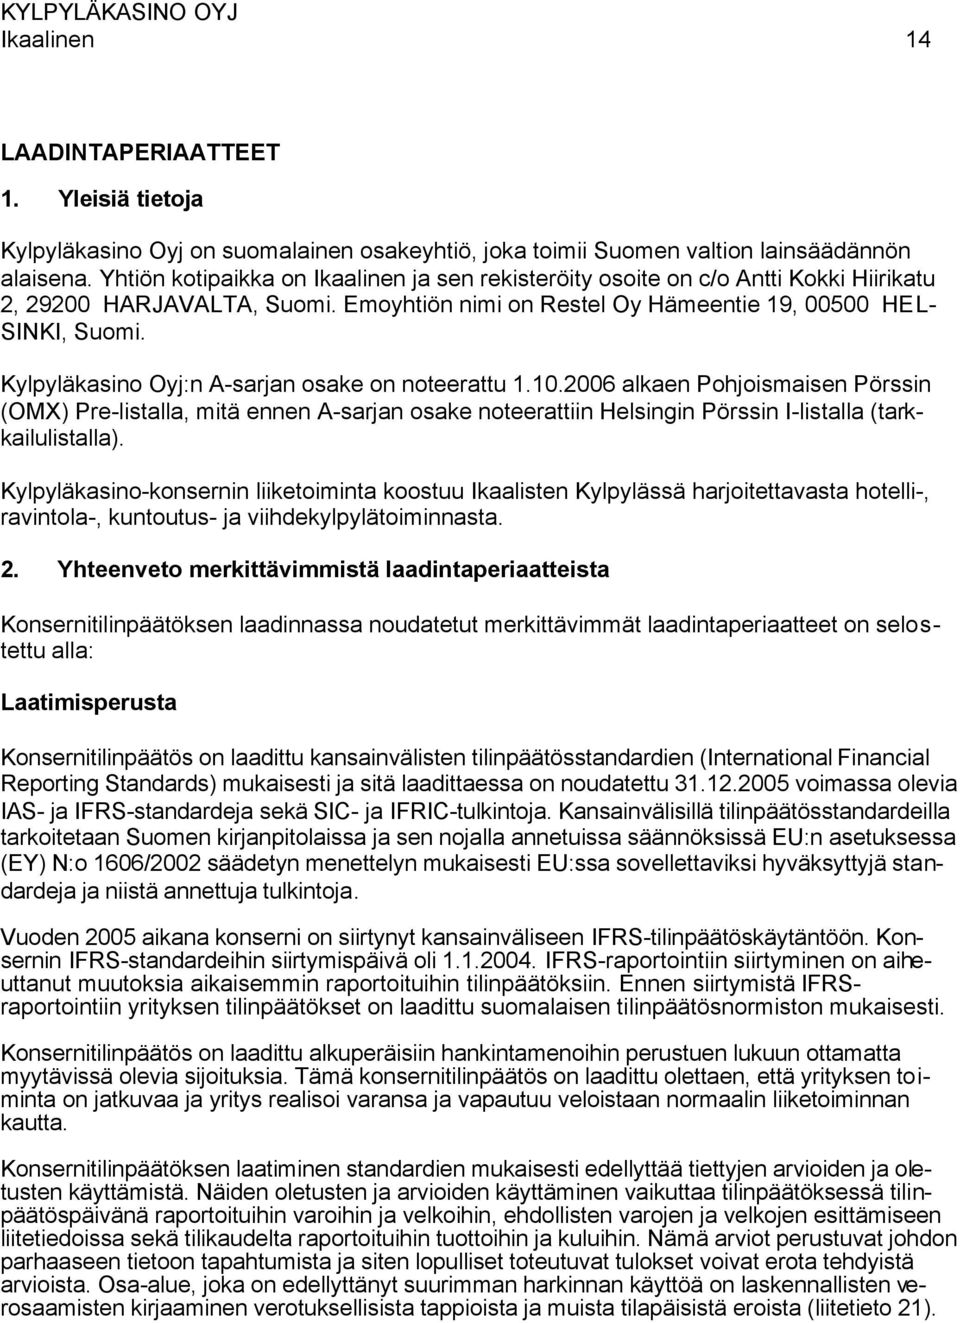 Kylpyläkasino Oyj:n A-sarjan osake on noteerattu 1.10.2006 alkaen Pohjoismaisen Pörssin (OMX) Pre-listalla, mitä ennen A-sarjan osake noteerattiin Helsingin Pörssin I-listalla (tarkkailulistalla).